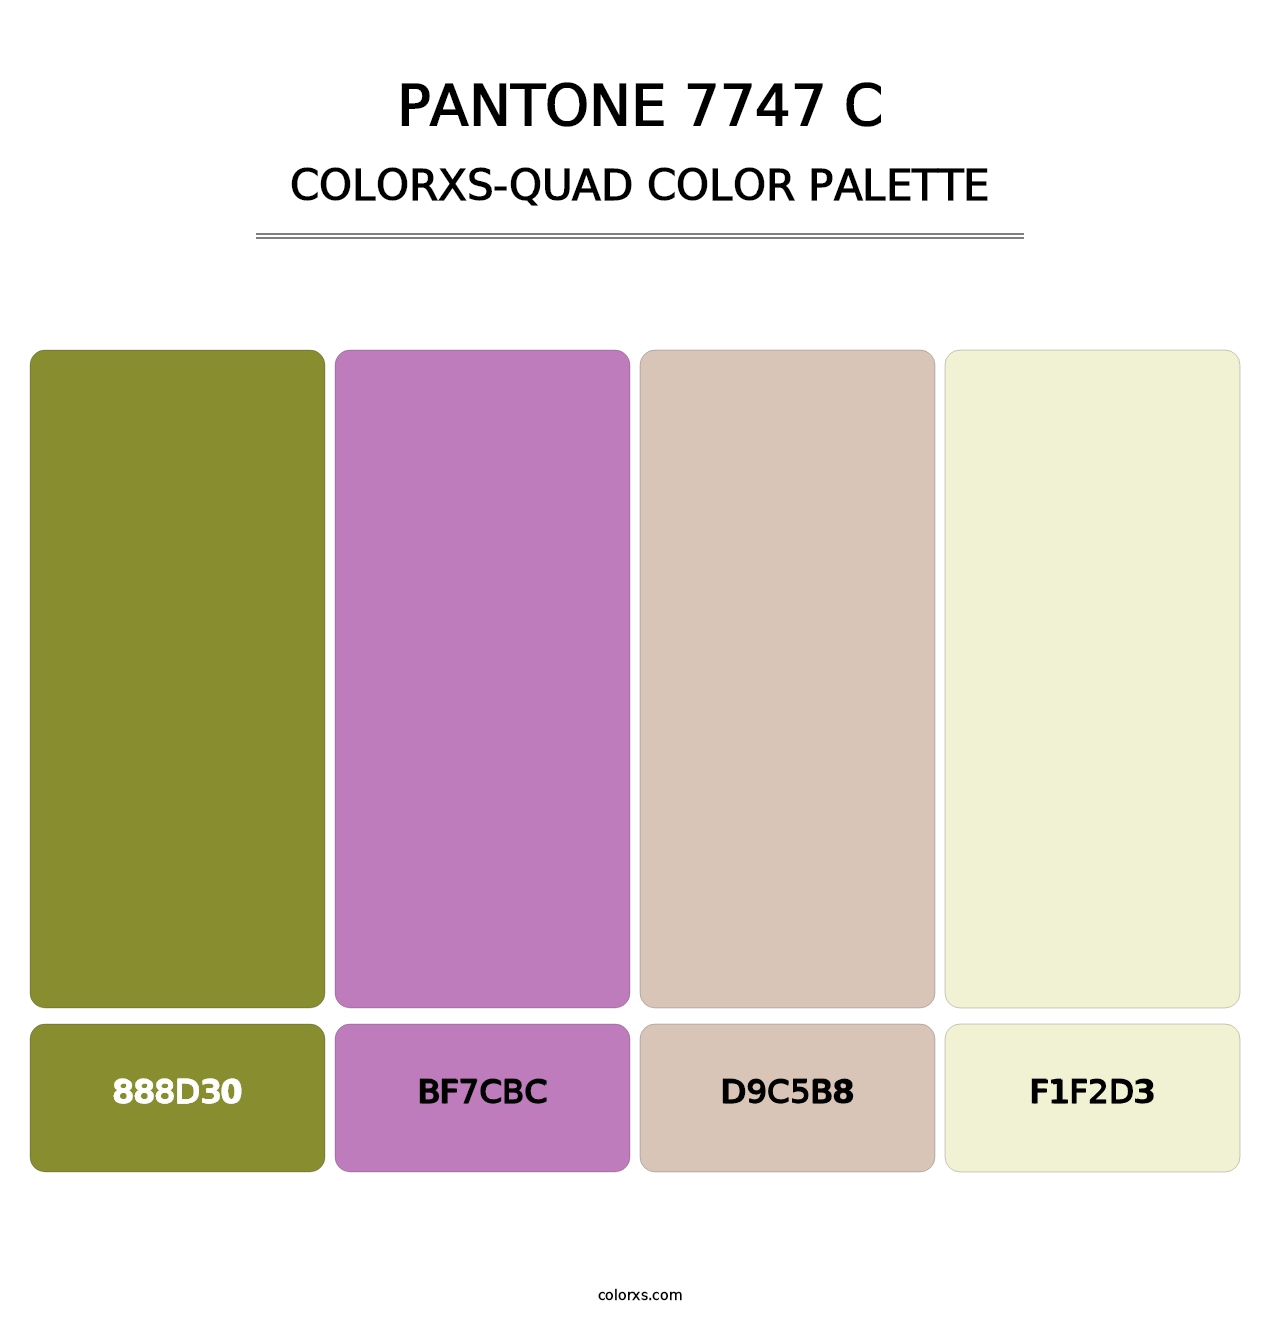 PANTONE 7747 C - Colorxs Quad Palette